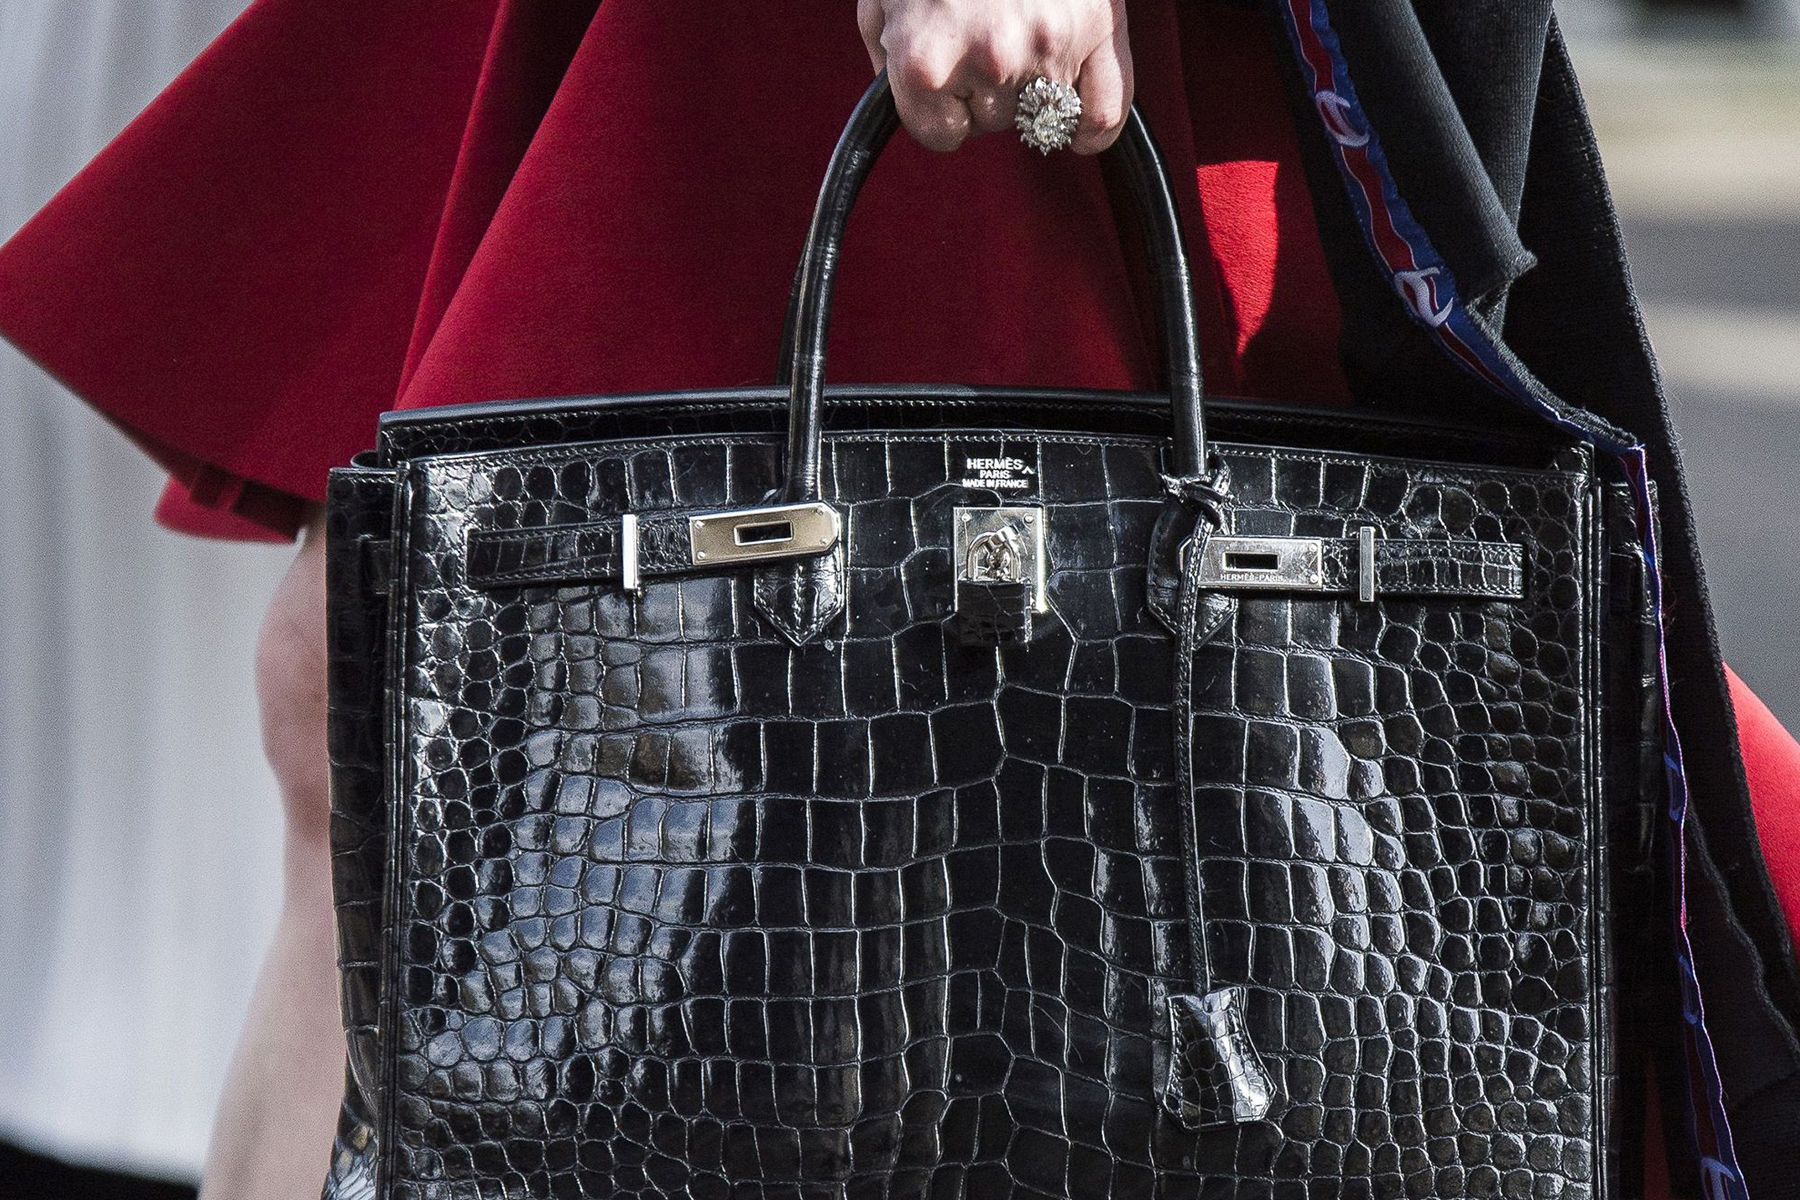 Hermès Birkin Bag accusa pratica commerciale scorretta